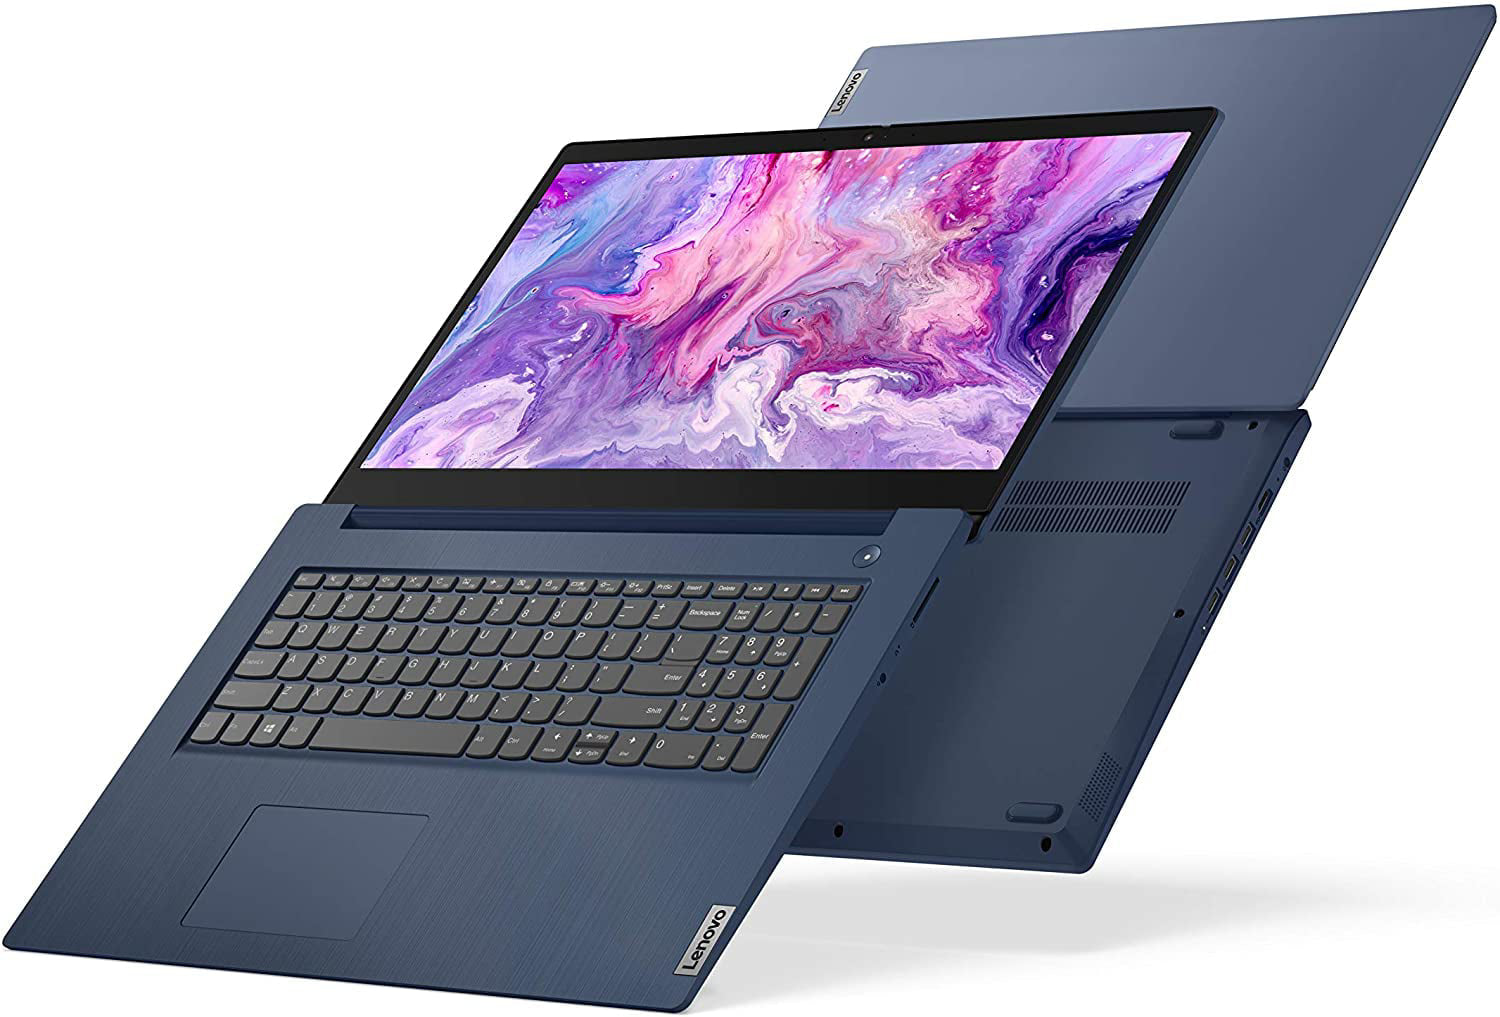 Lenovo IdeaPad 3 17.3" Laptop: 10th Generation Core i5-10210U, 256GB SSD, 8GB RAM, 17.3" Full HD IPS Display